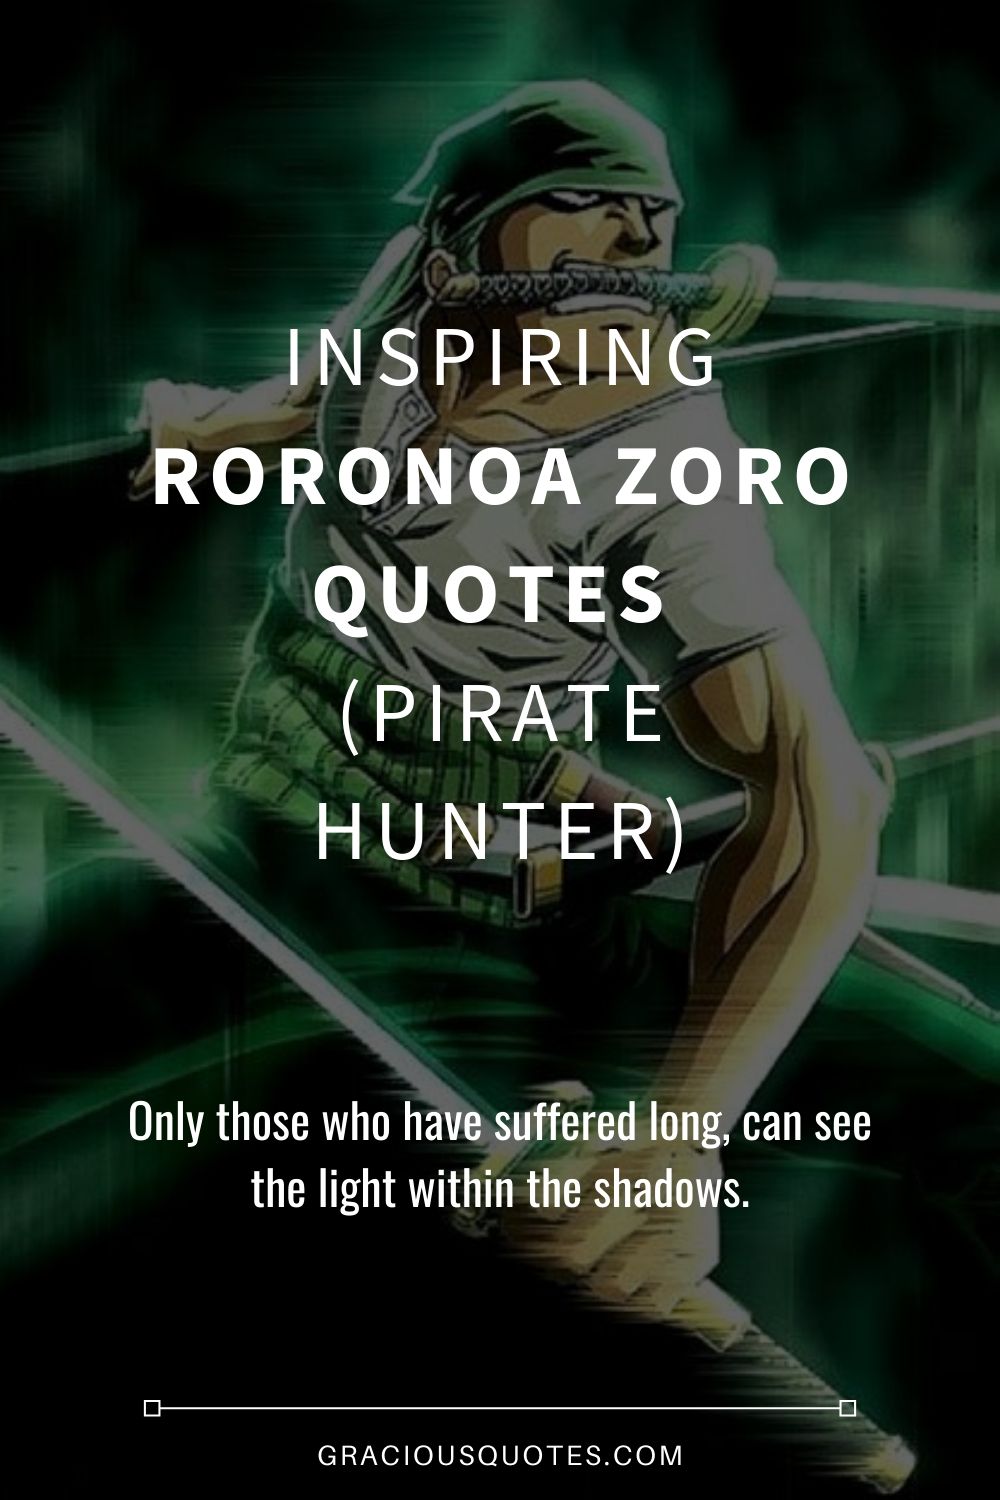 Inspiring Roronoa Zoro Quotes (PIRATE HUNTER)